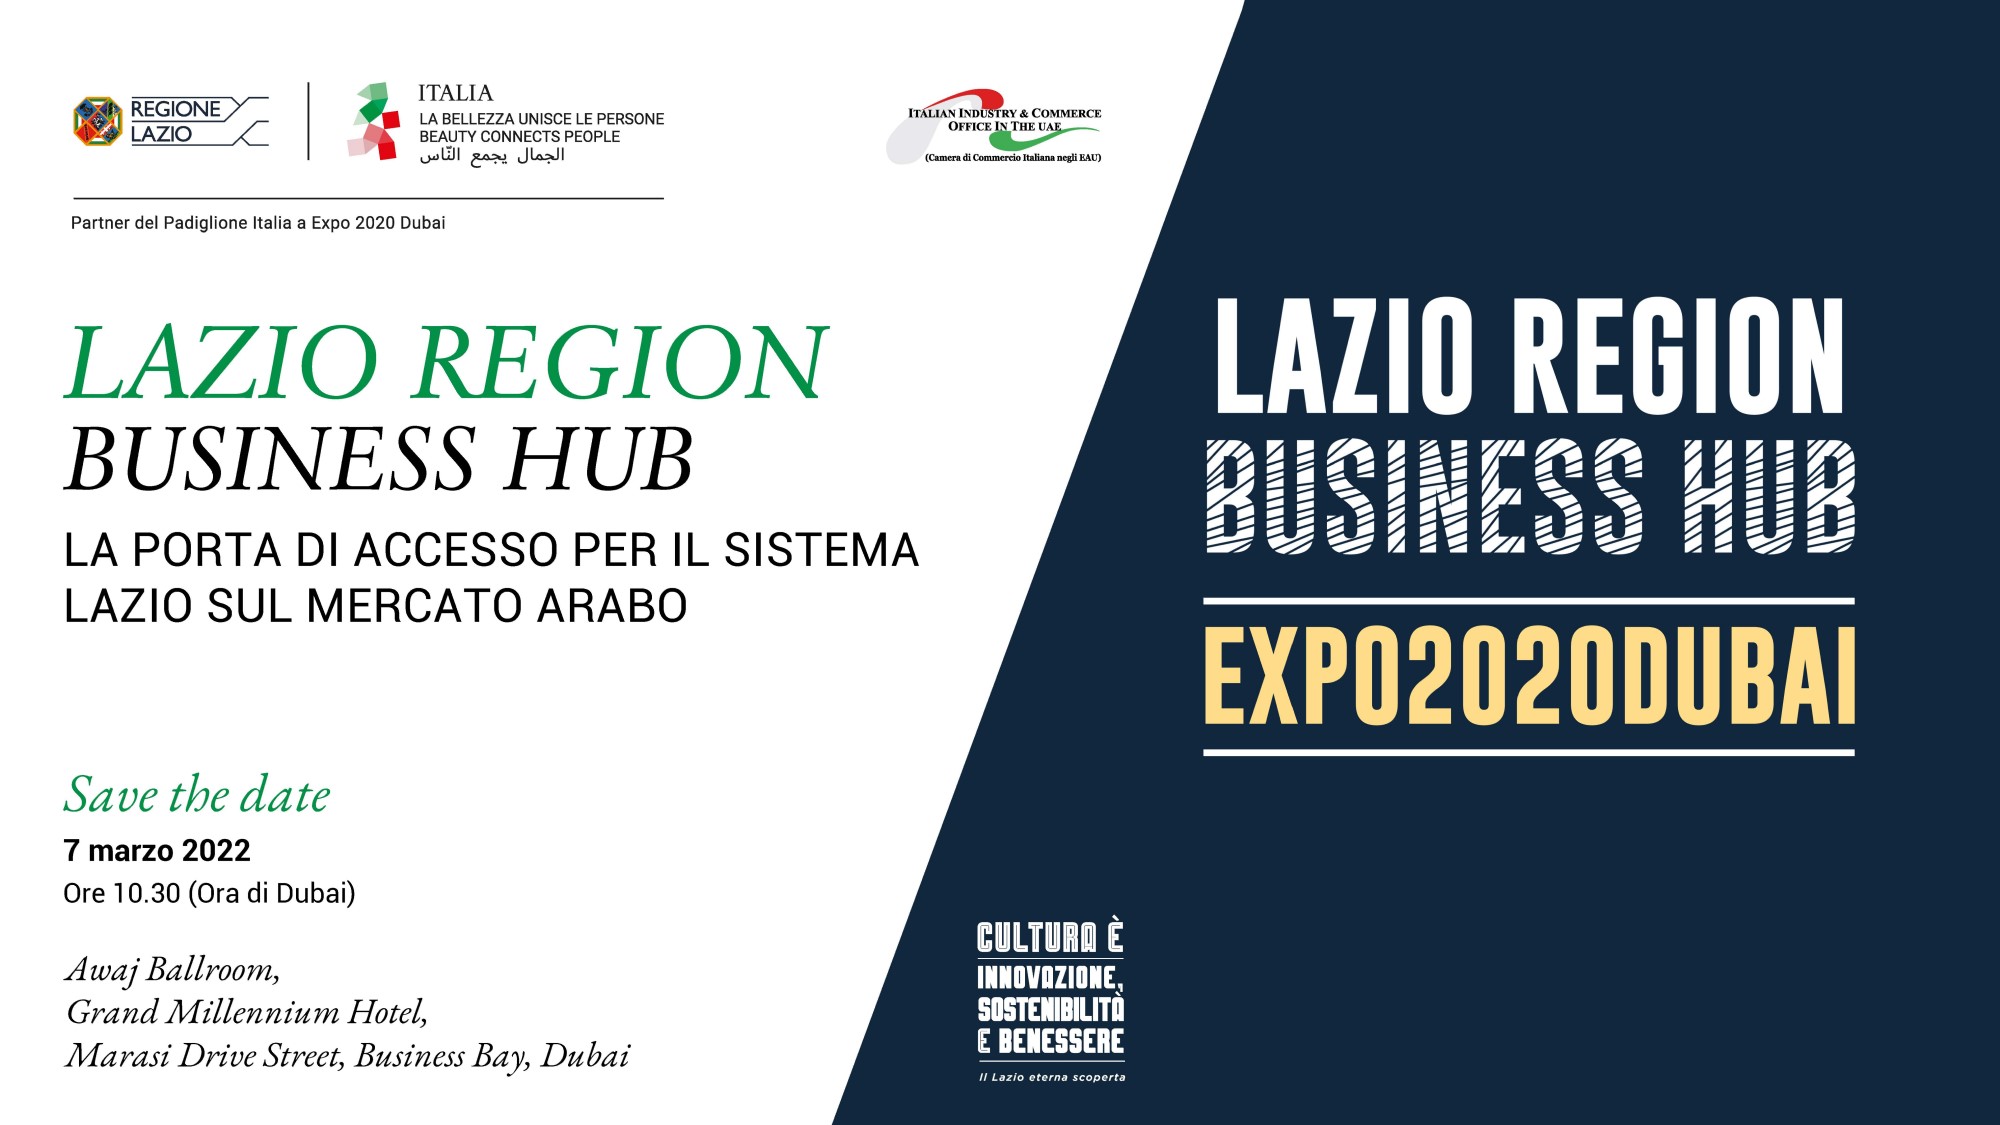 Lazio Region Business Hub – La porta di accesso per il Sistema Lazio sul mercato arabo